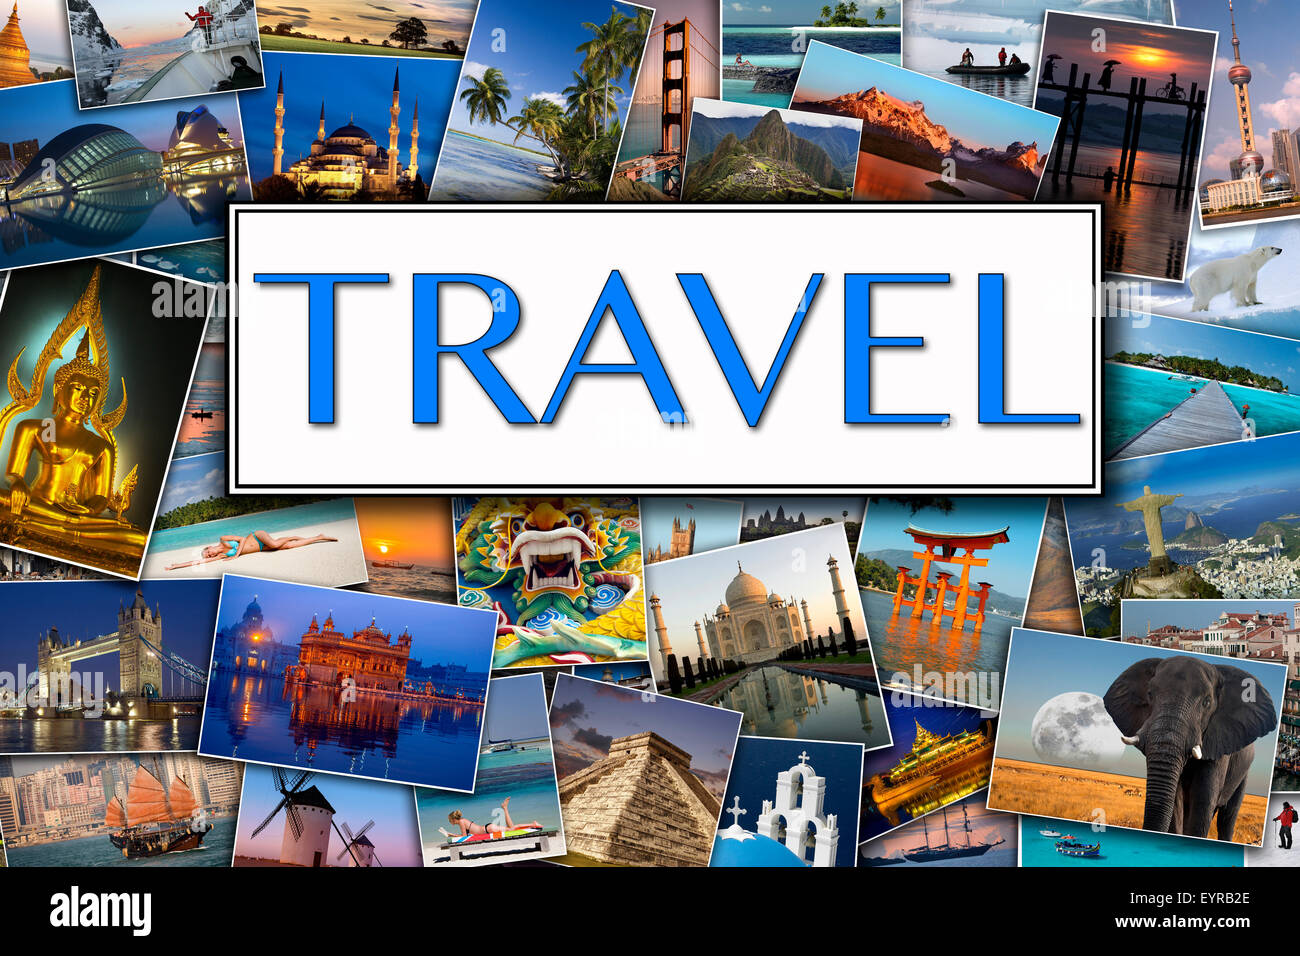 Reise-Page Header - Fotos der internationalen Reiseziele Stockfoto